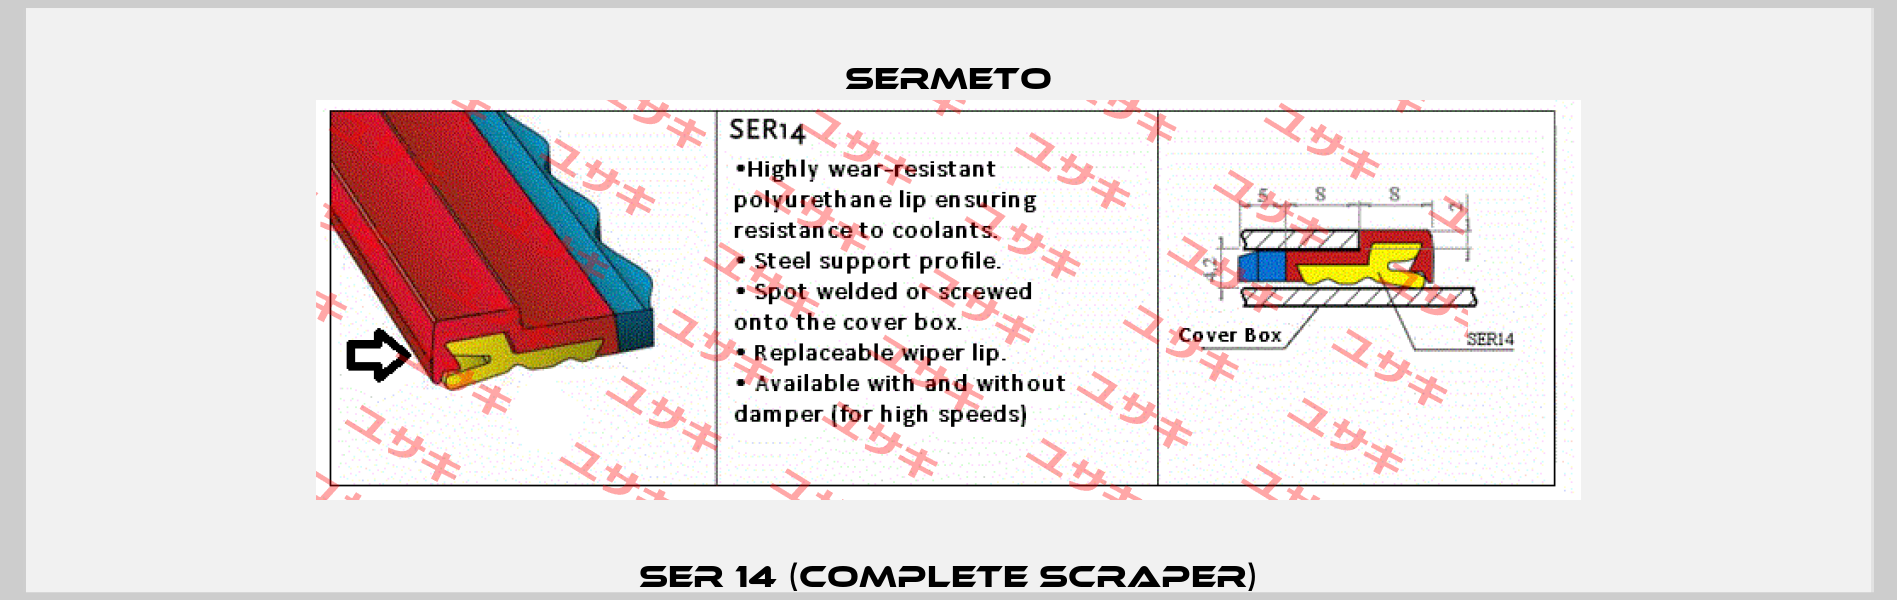 SER 14 (Complete scraper) Sermeto